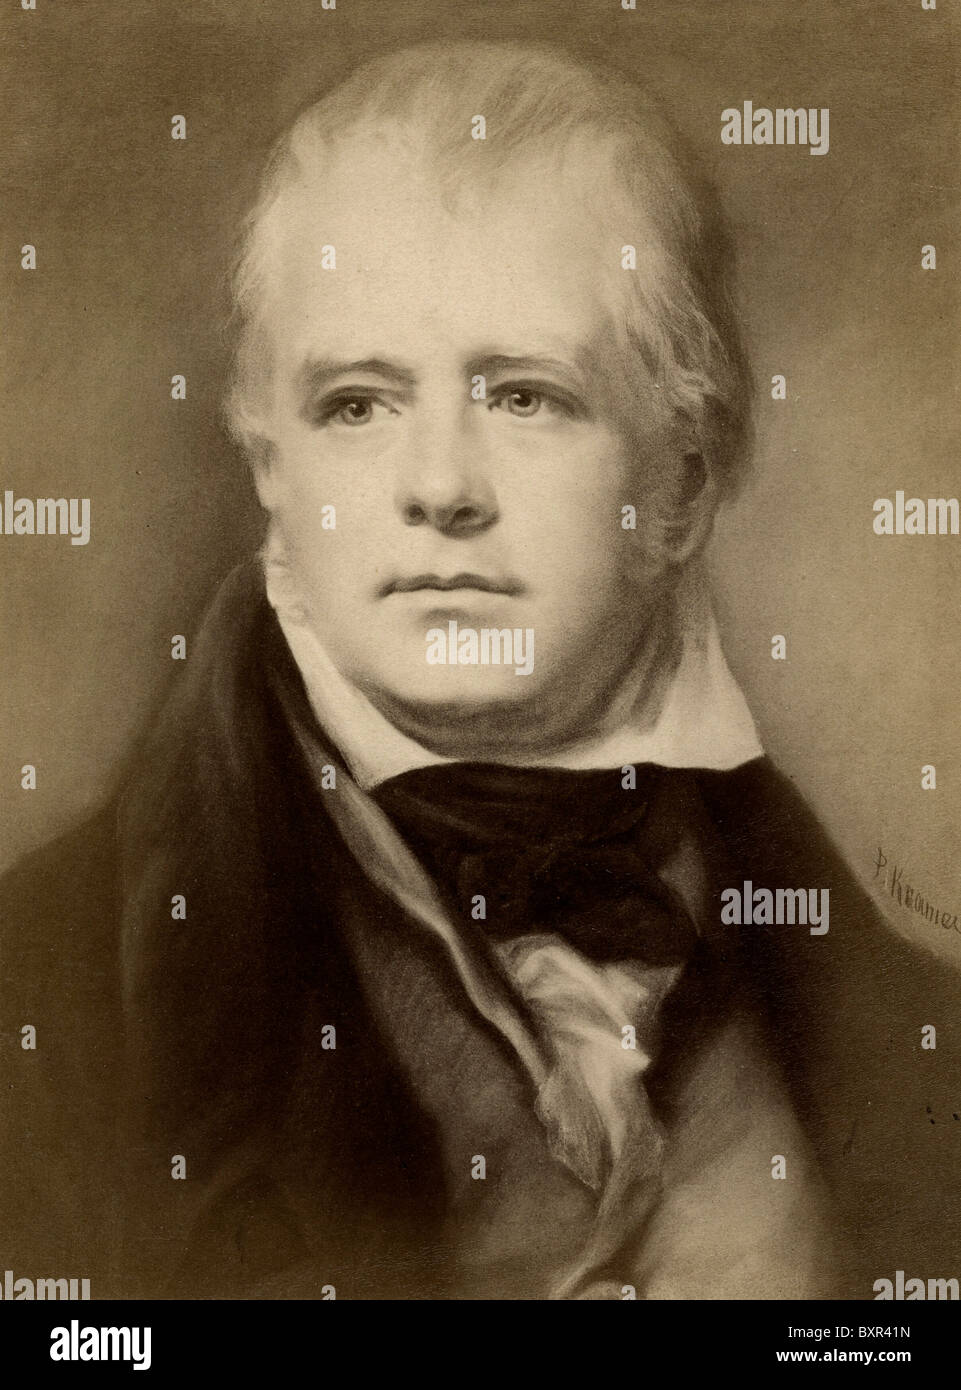 Porträt des schottischen Schriftsteller Sir Walter Scott (1771-1832) und historische Schriftsteller (c19th Eiweiss fotografieren of Painting) Stockfoto